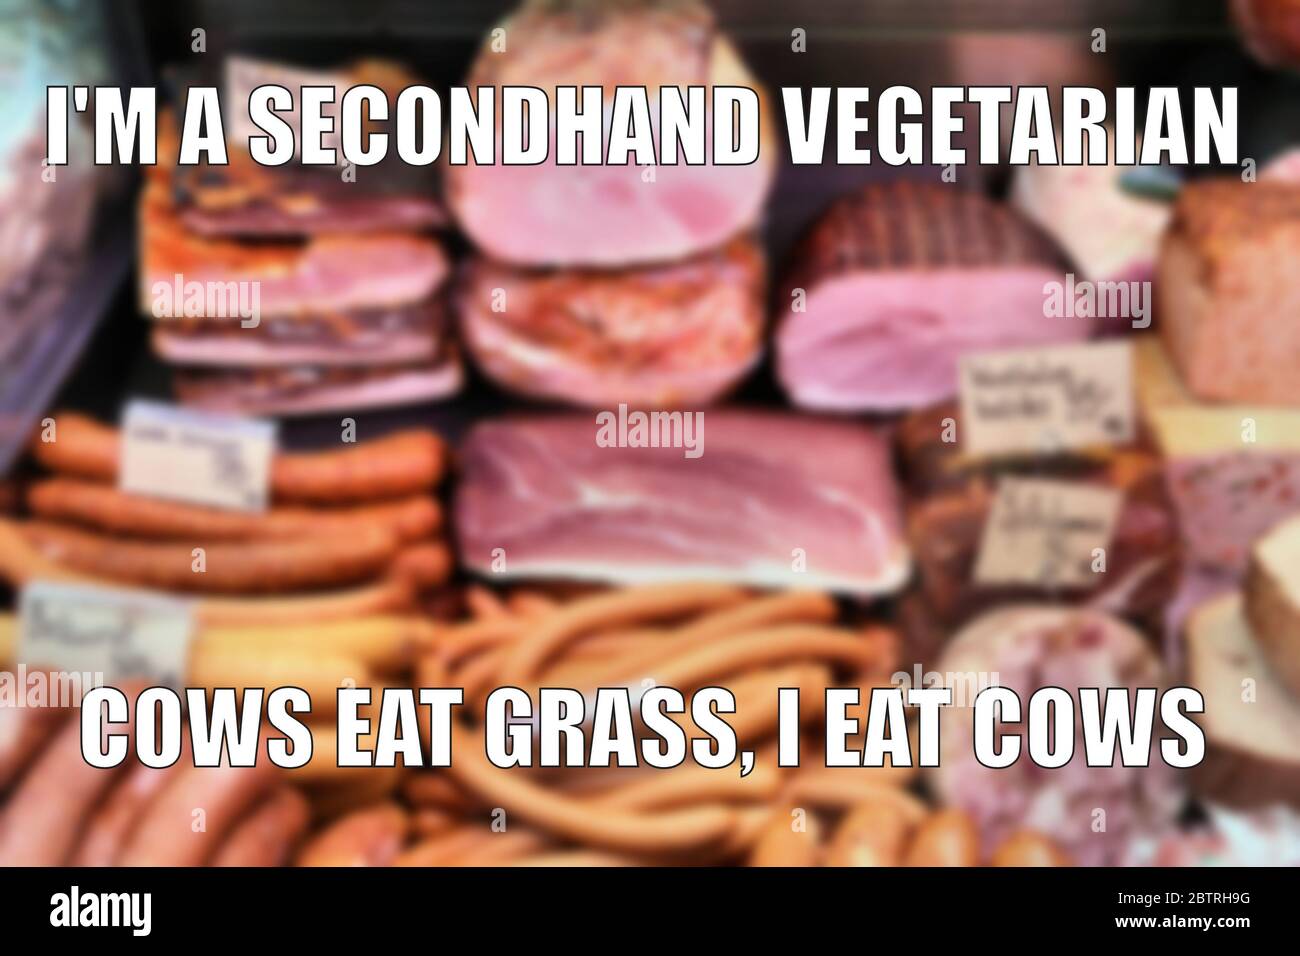 Carne de segunda mano eater vegetariano divertido meme para compartir en las redes sociales. Foto de stock